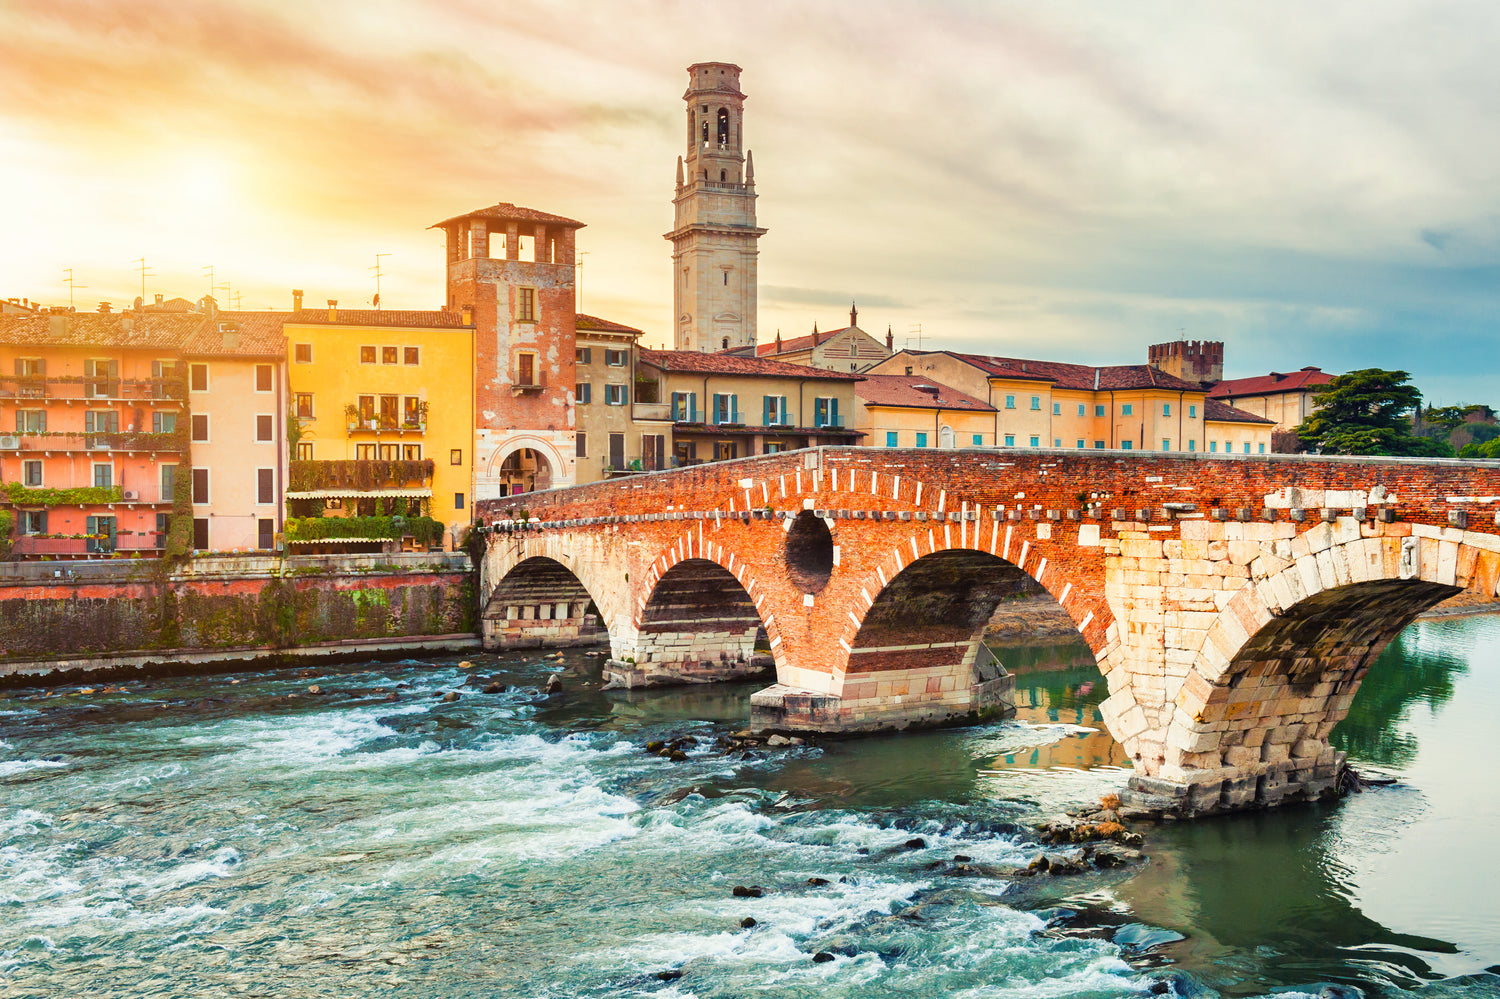 Grifoni Verona: En hyldest til Italiensk finesse og stil